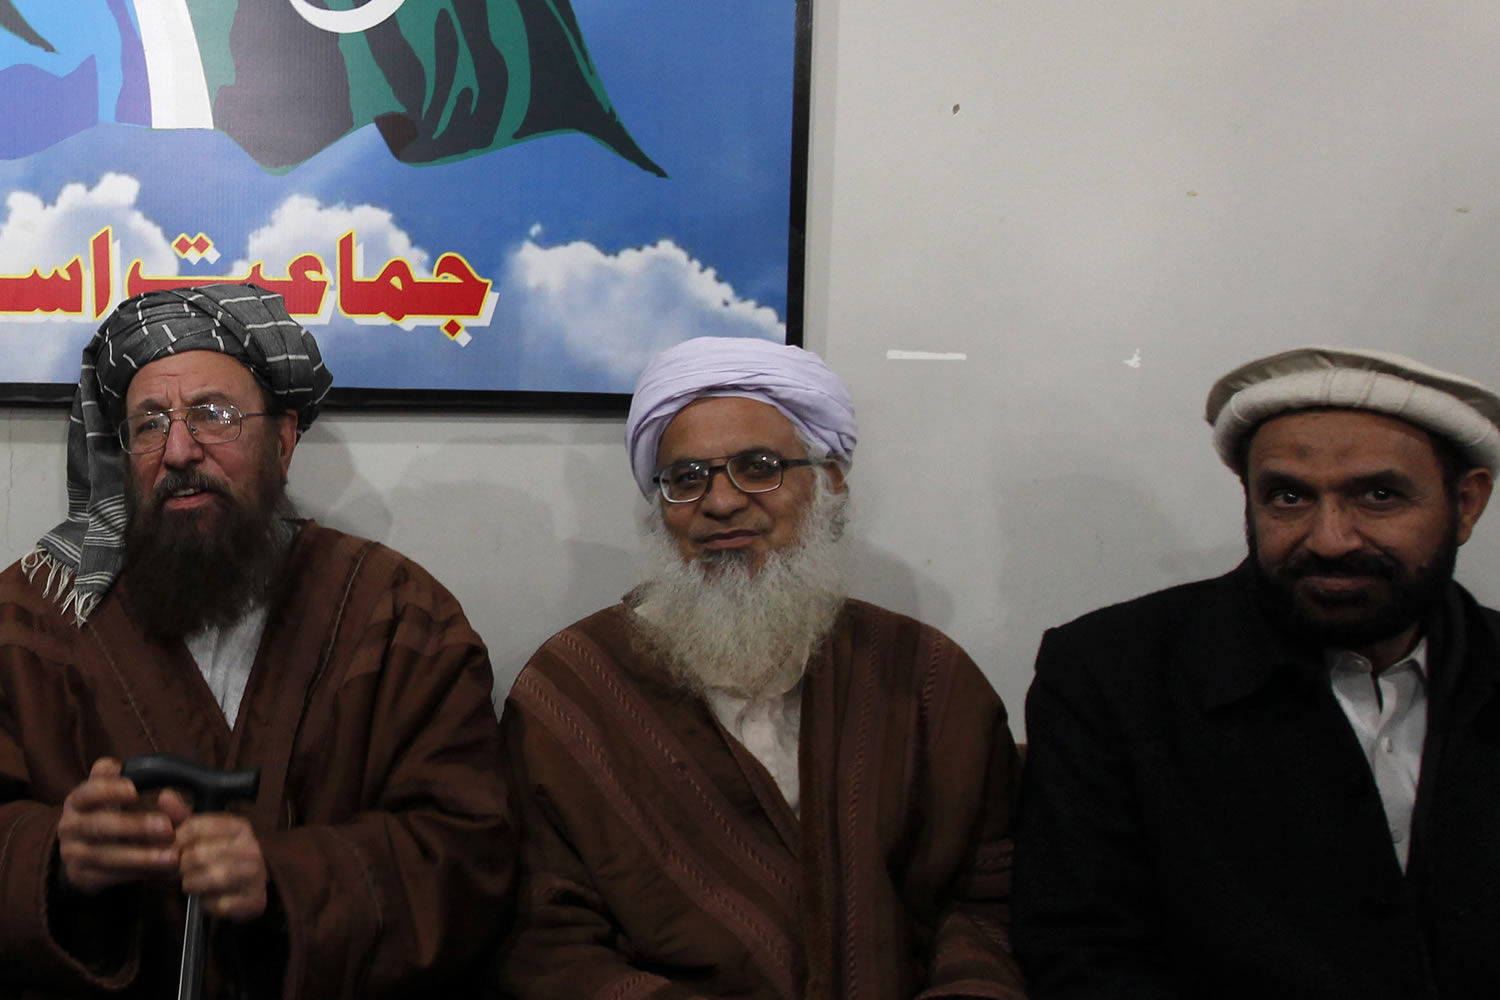 El clérigo islamista Abdul Aziz muestra su apoyo al ISIL y mete a China en la ecuación